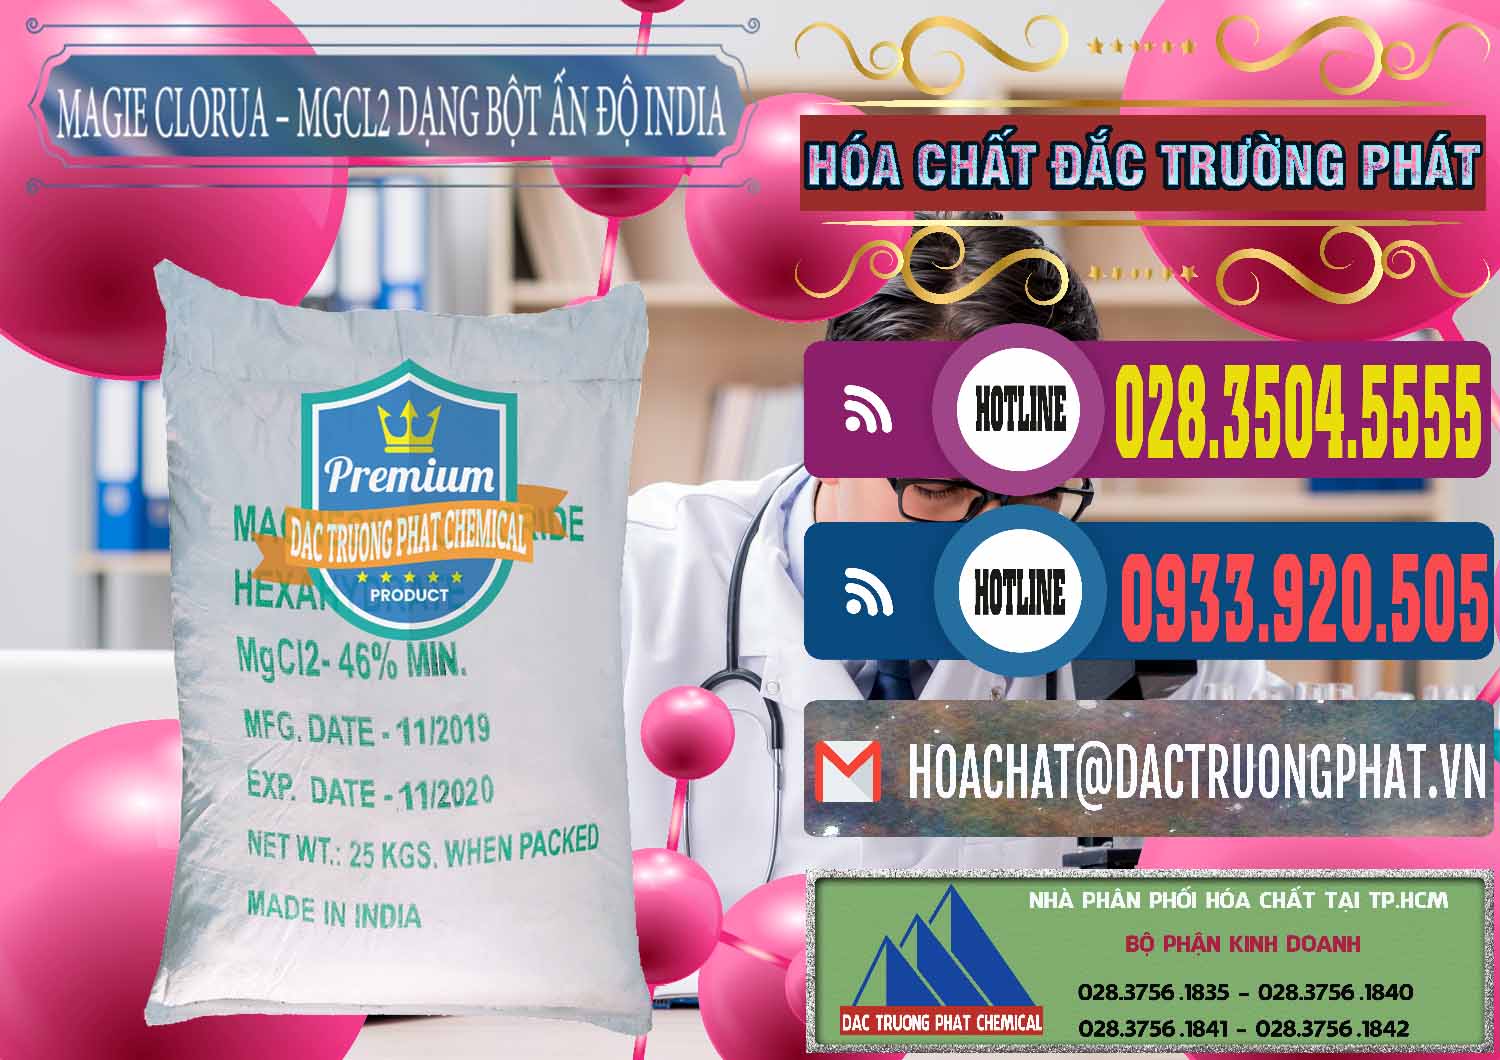 Công ty chuyên bán _ cung ứng Magie Clorua – MGCL2 96% Dạng Bột Ấn Độ India - 0206 - Cty phân phối _ cung ứng hóa chất tại TP.HCM - muabanhoachat.com.vn